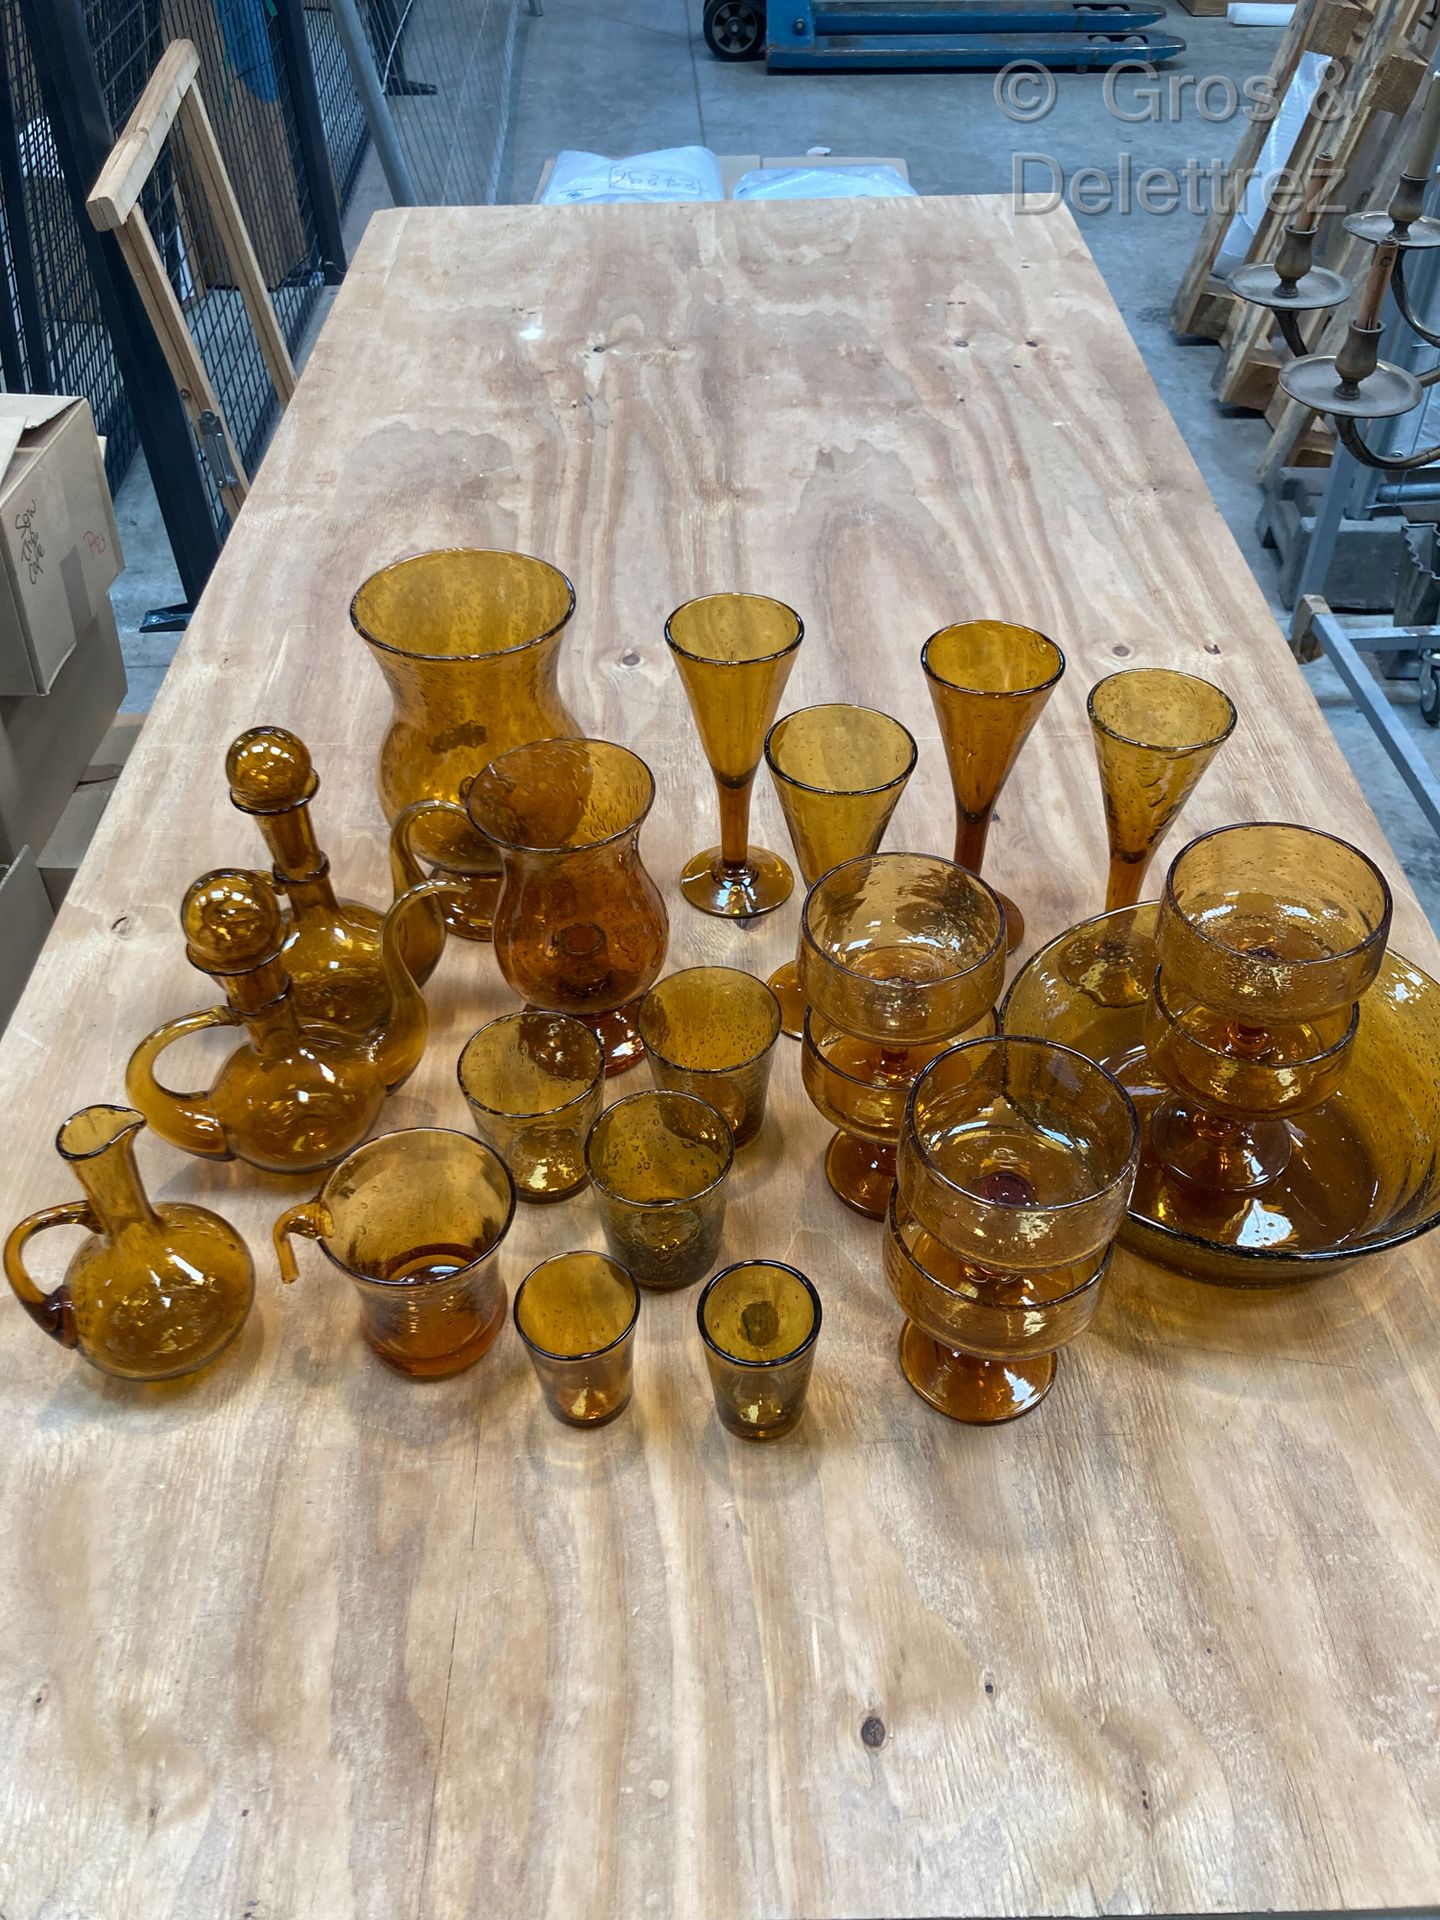 Null 比奥特。橙色泡沫玻璃的一部分，由三个醒酒器，两个烛台，一个碗，一个杯子，四个长笛，三个高脚杯，两个利口酒杯和六个杯子组成。



小事故